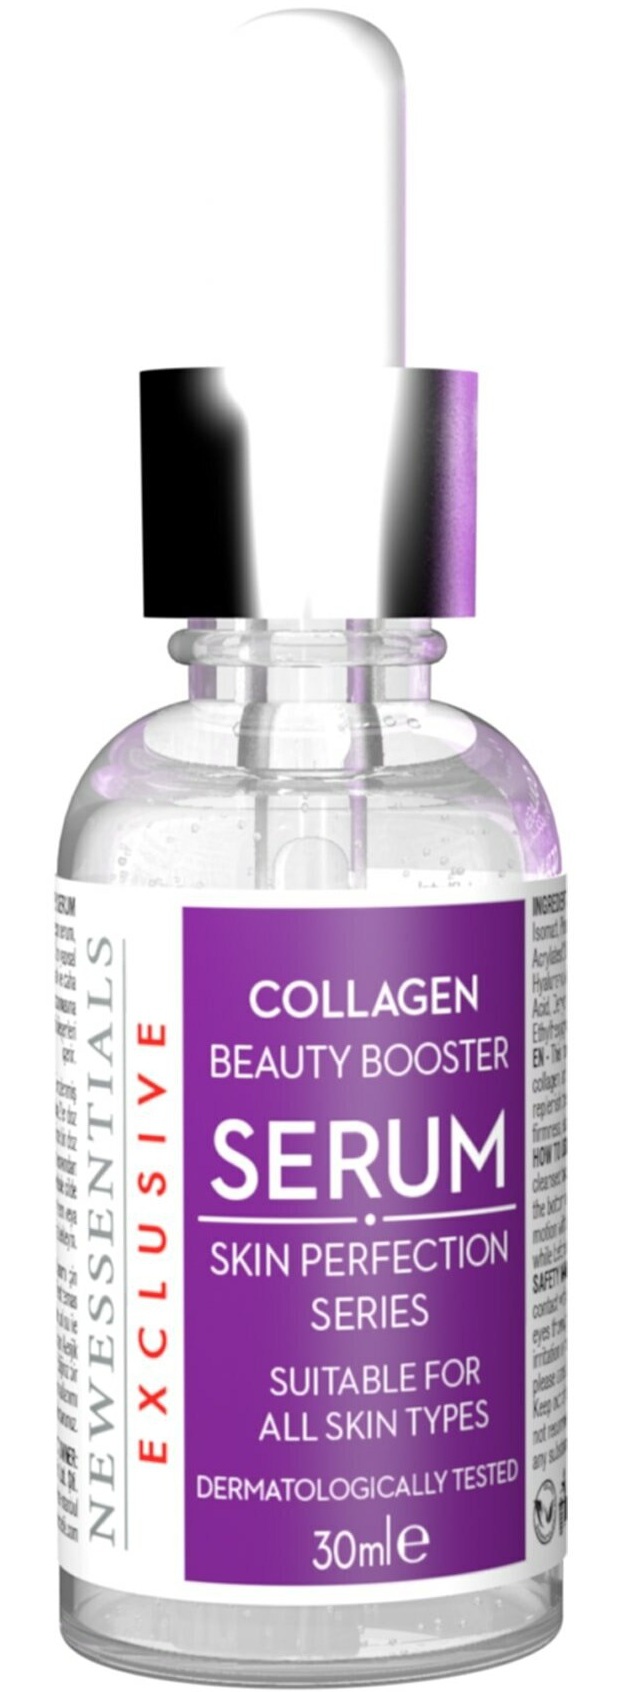 New Essentials Collagen Serum